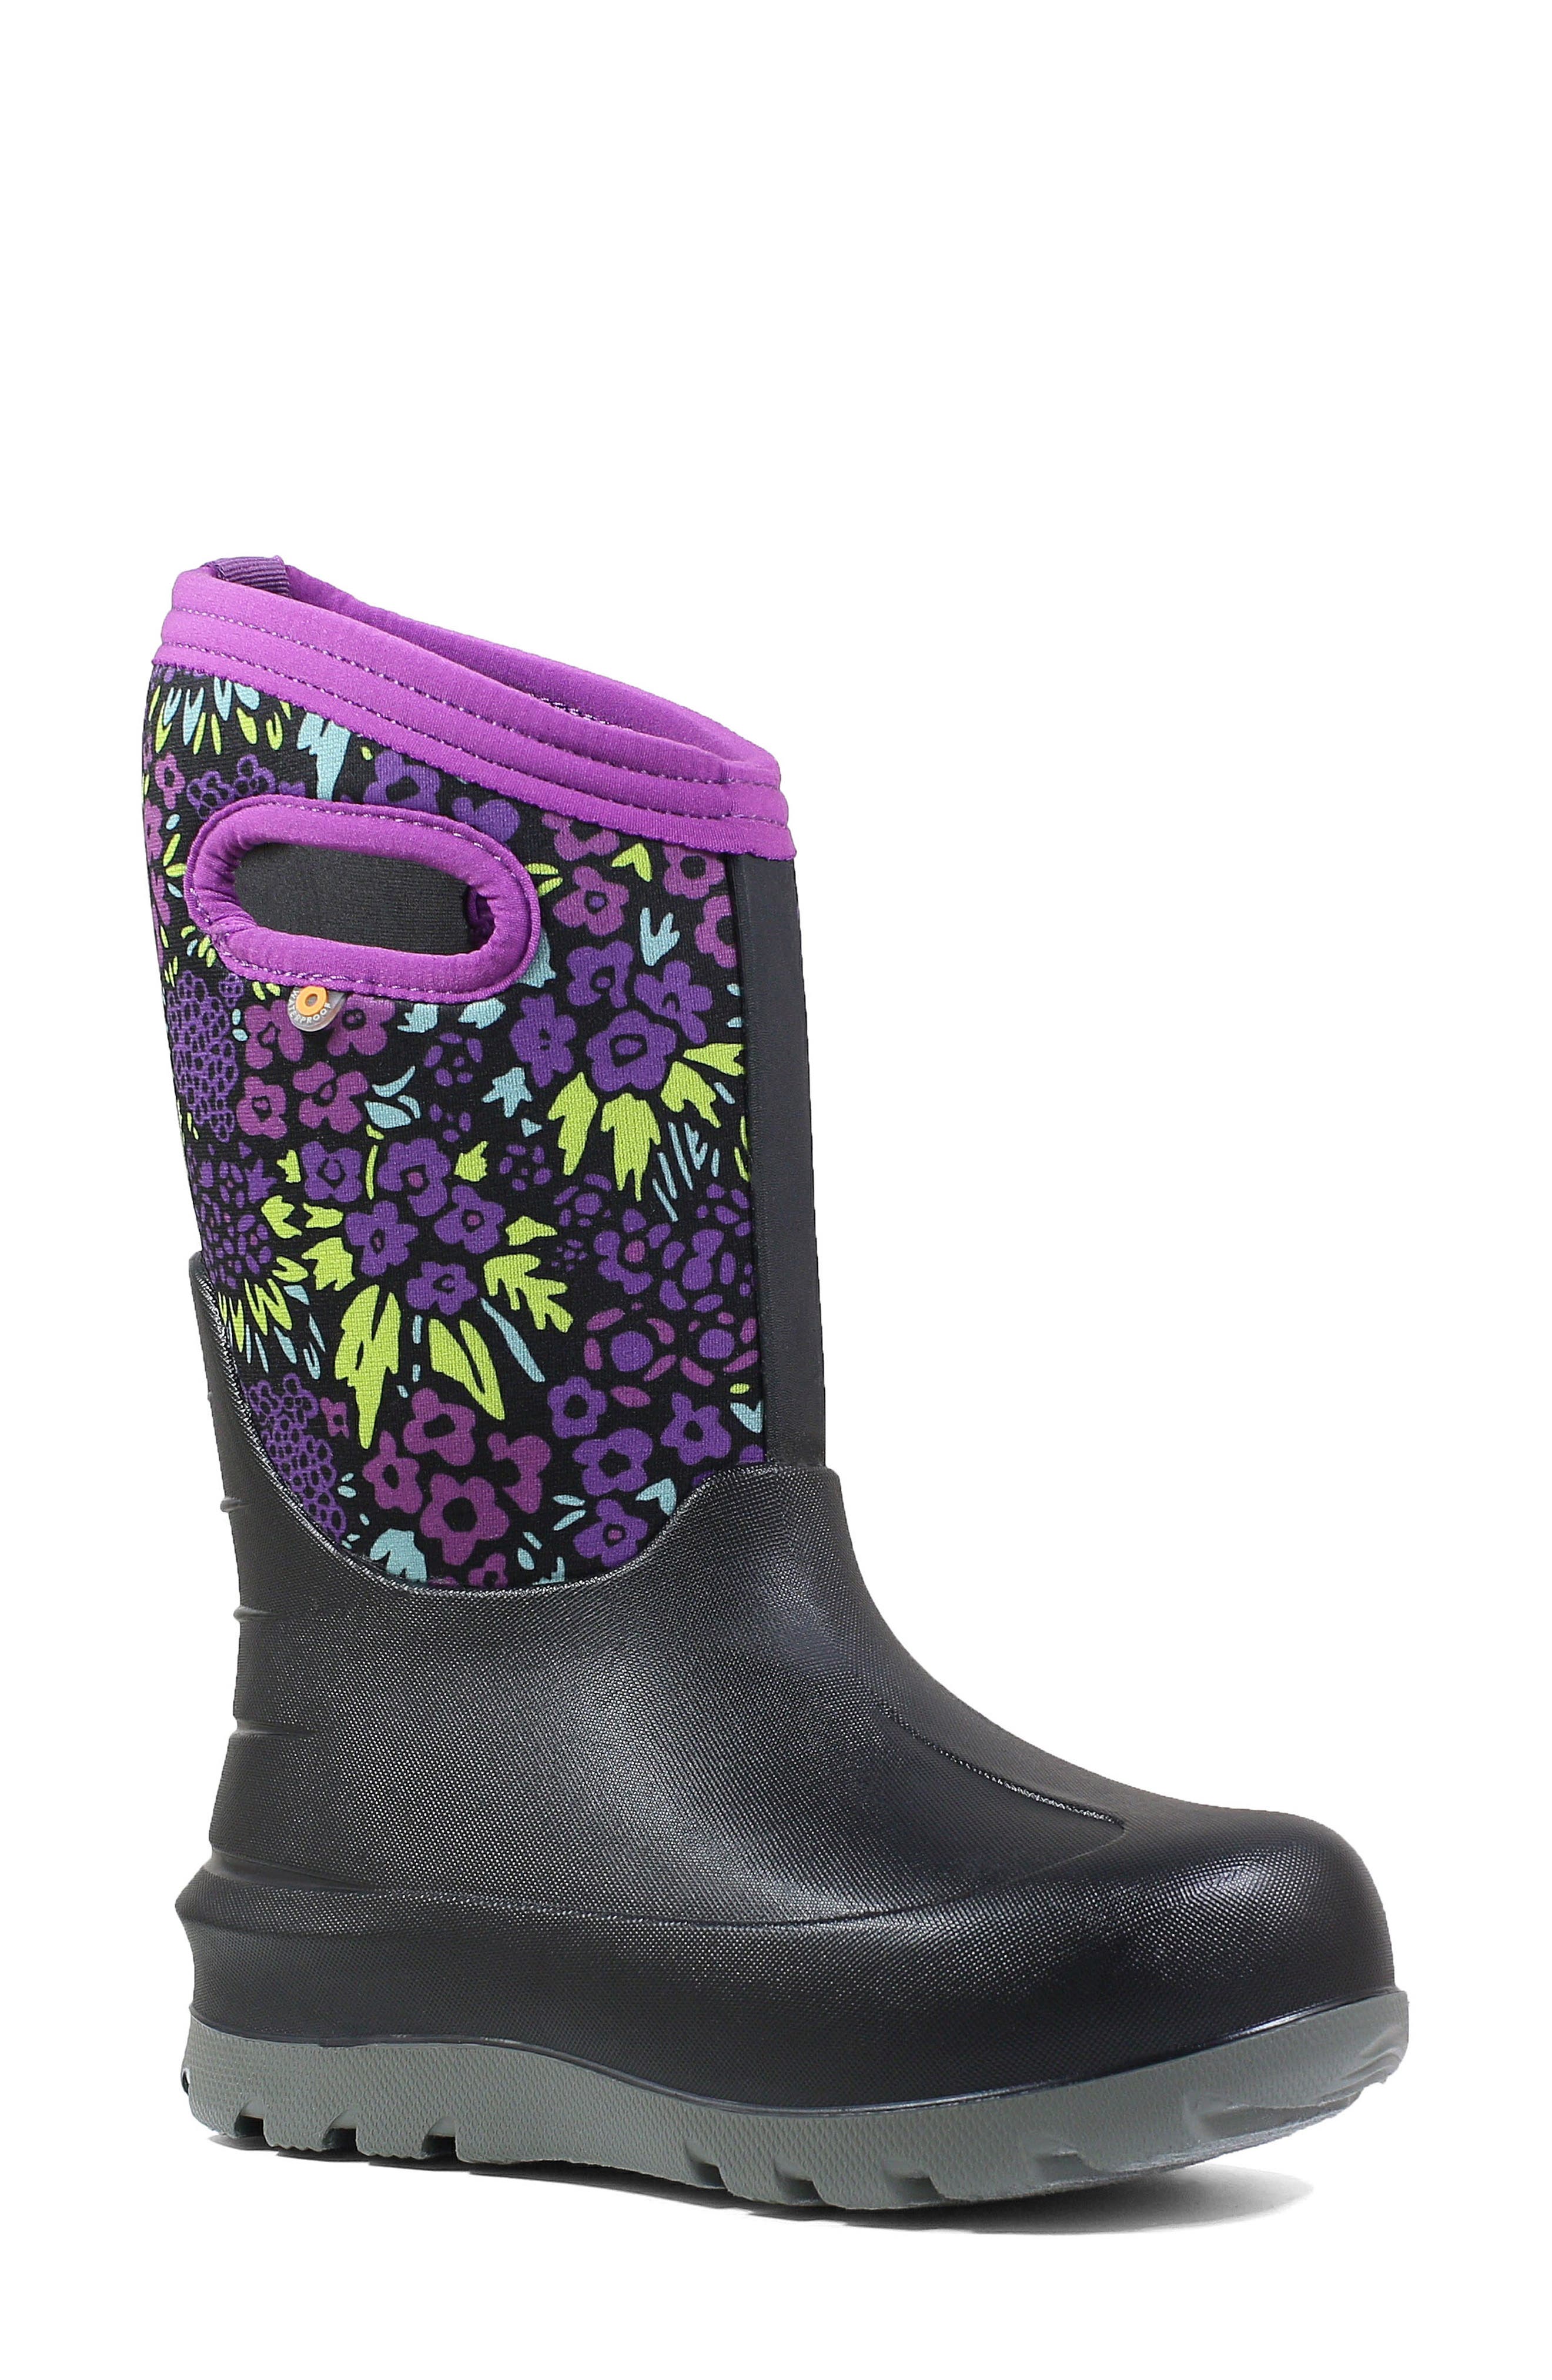 waterproof boots nordstrom